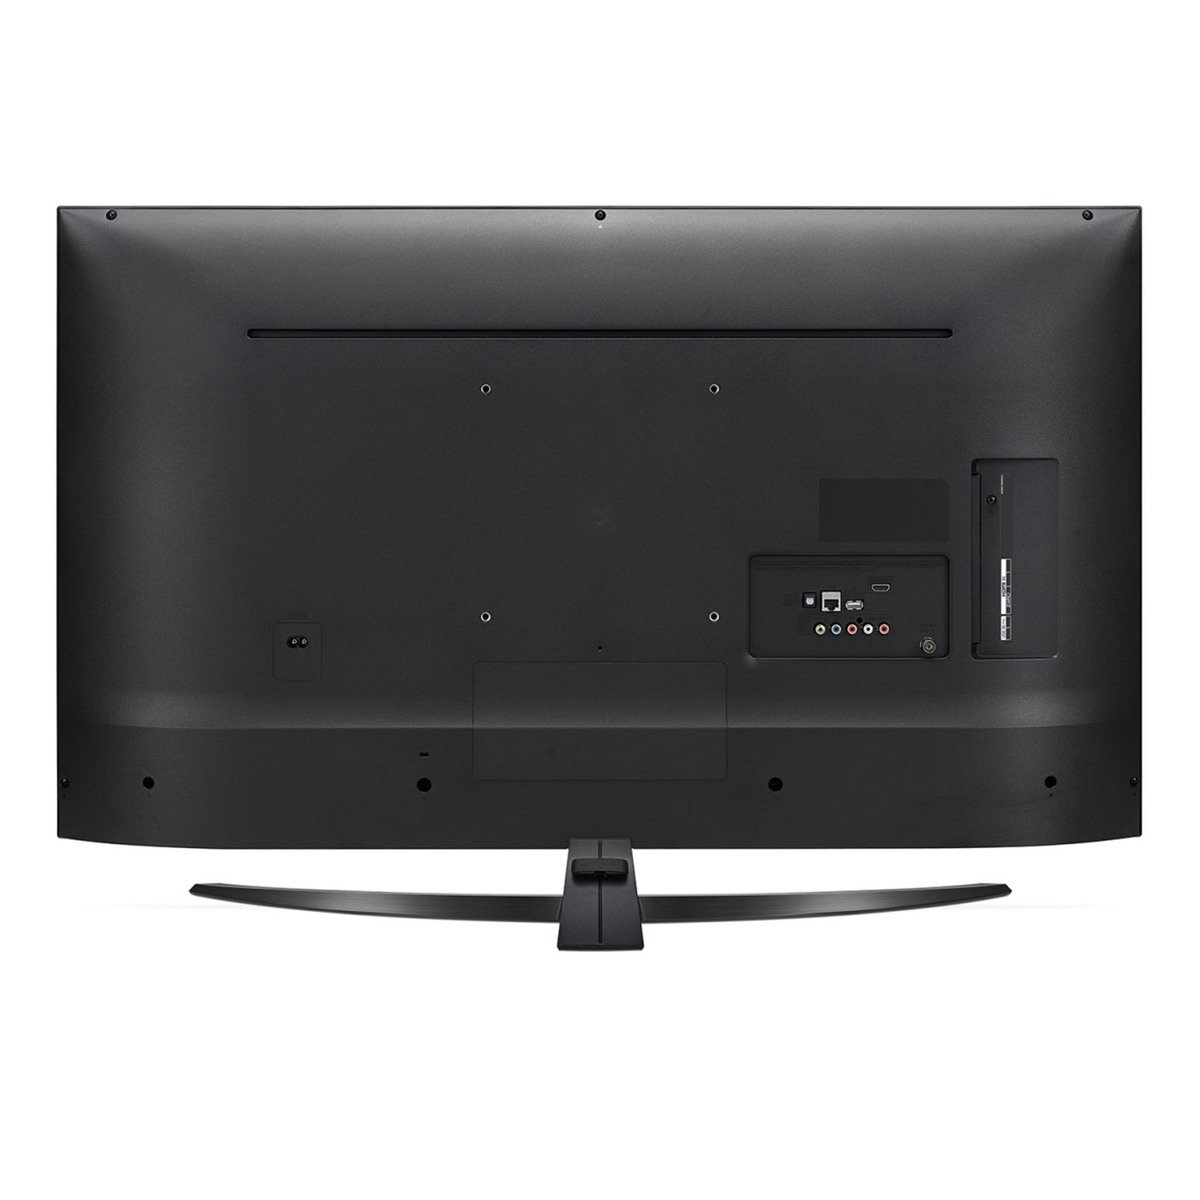 LG 4K Ultra HD Smart LED TV 65UM7450PVA 65"